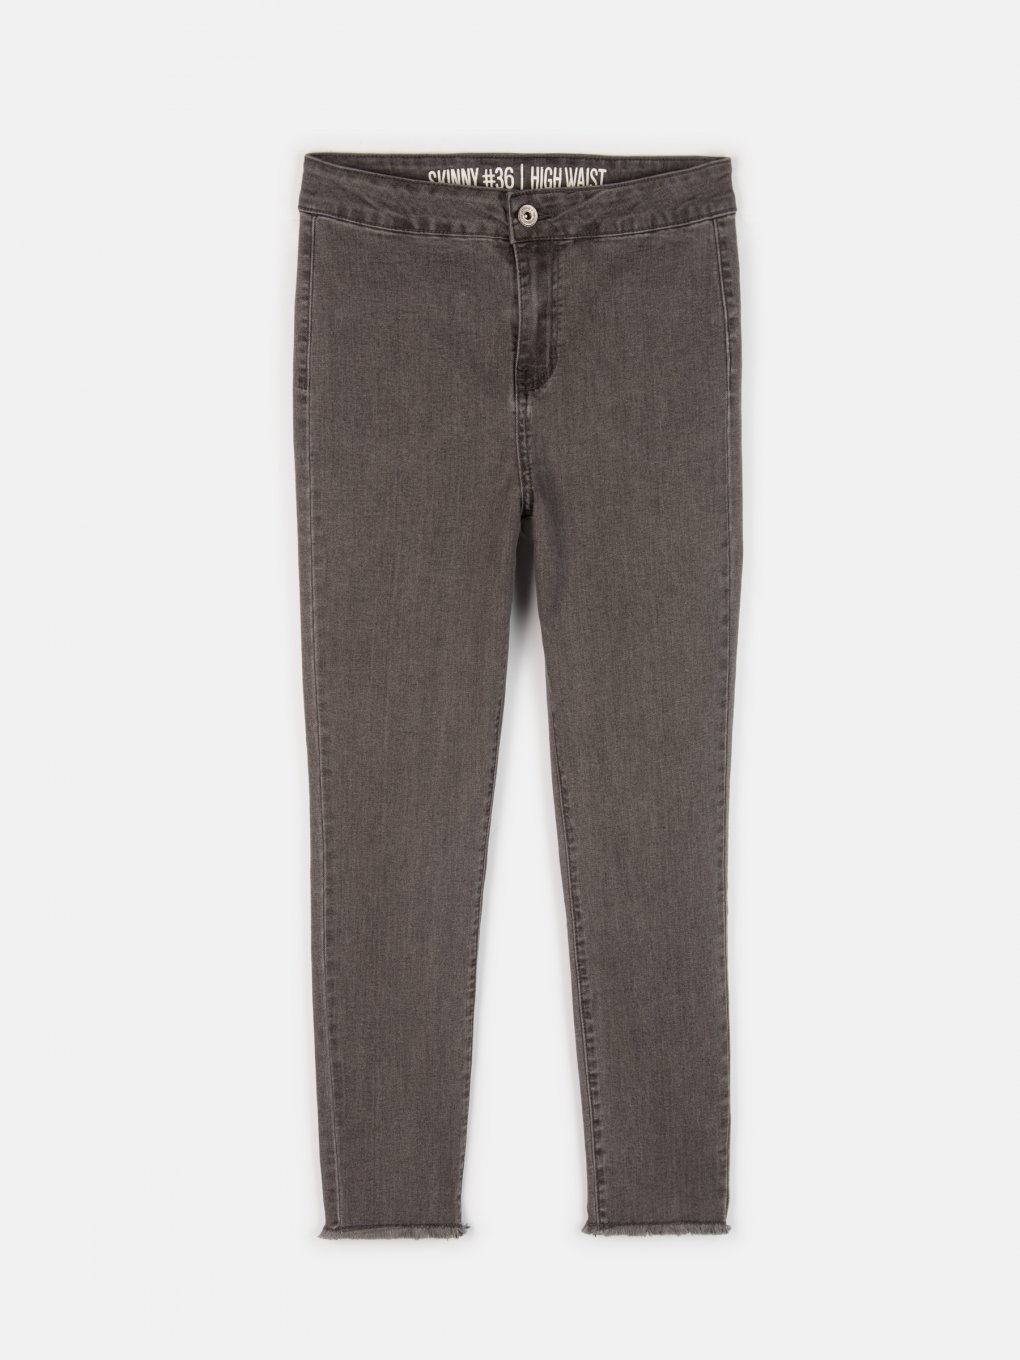 Basic 7/8 leg skinny jeans